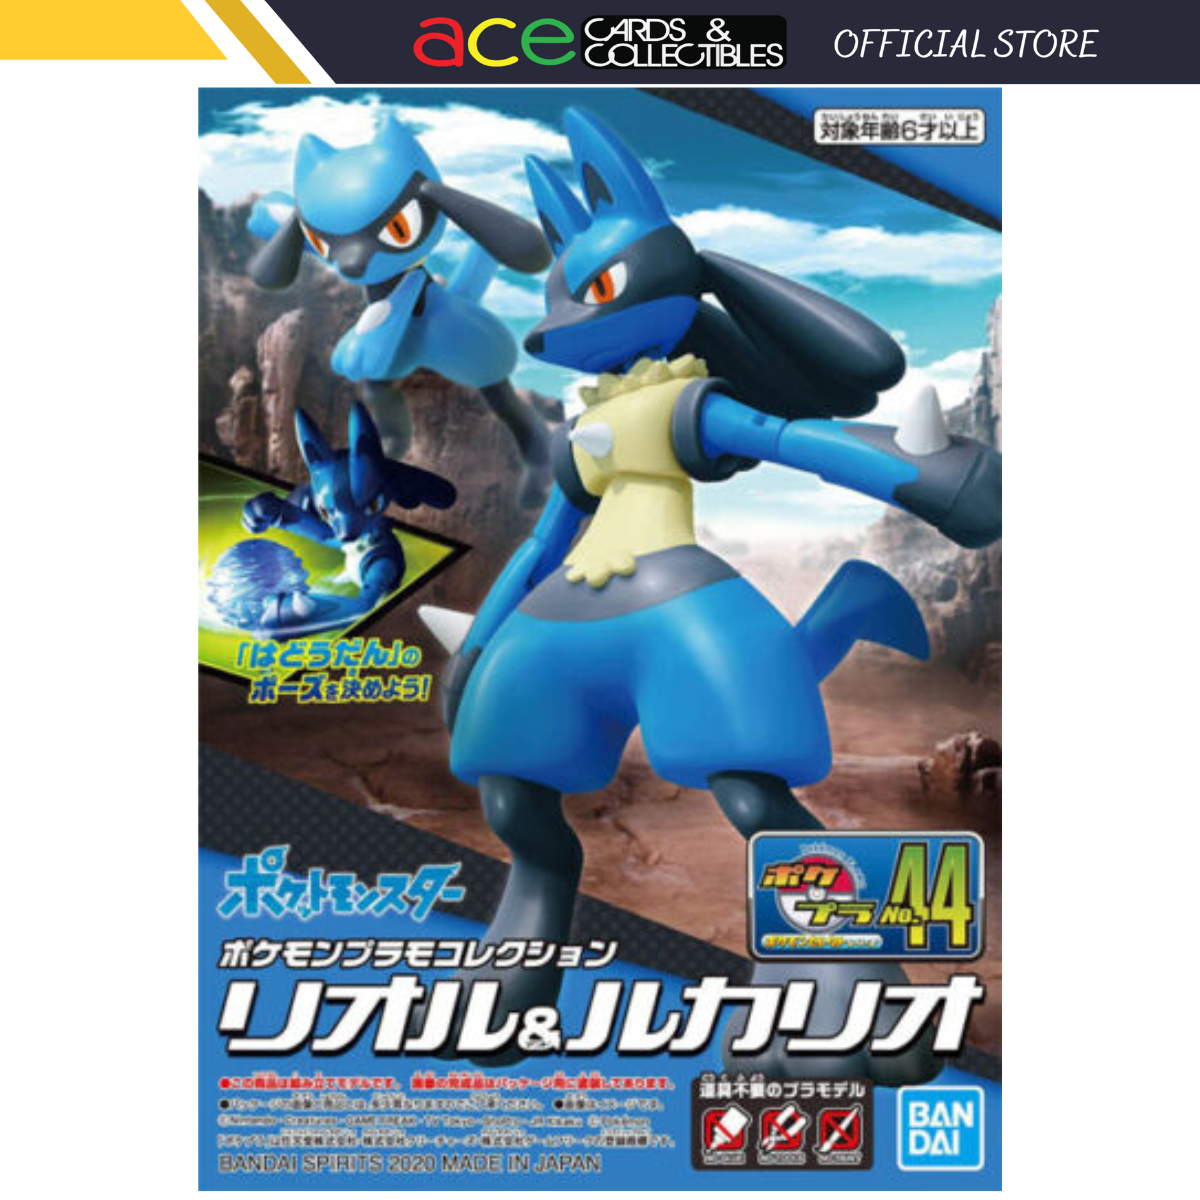 Pokémon Plastic Model Collection No.44 "Select Series Riolu & Lucario"-Bandai-Ace Cards & Collectibles